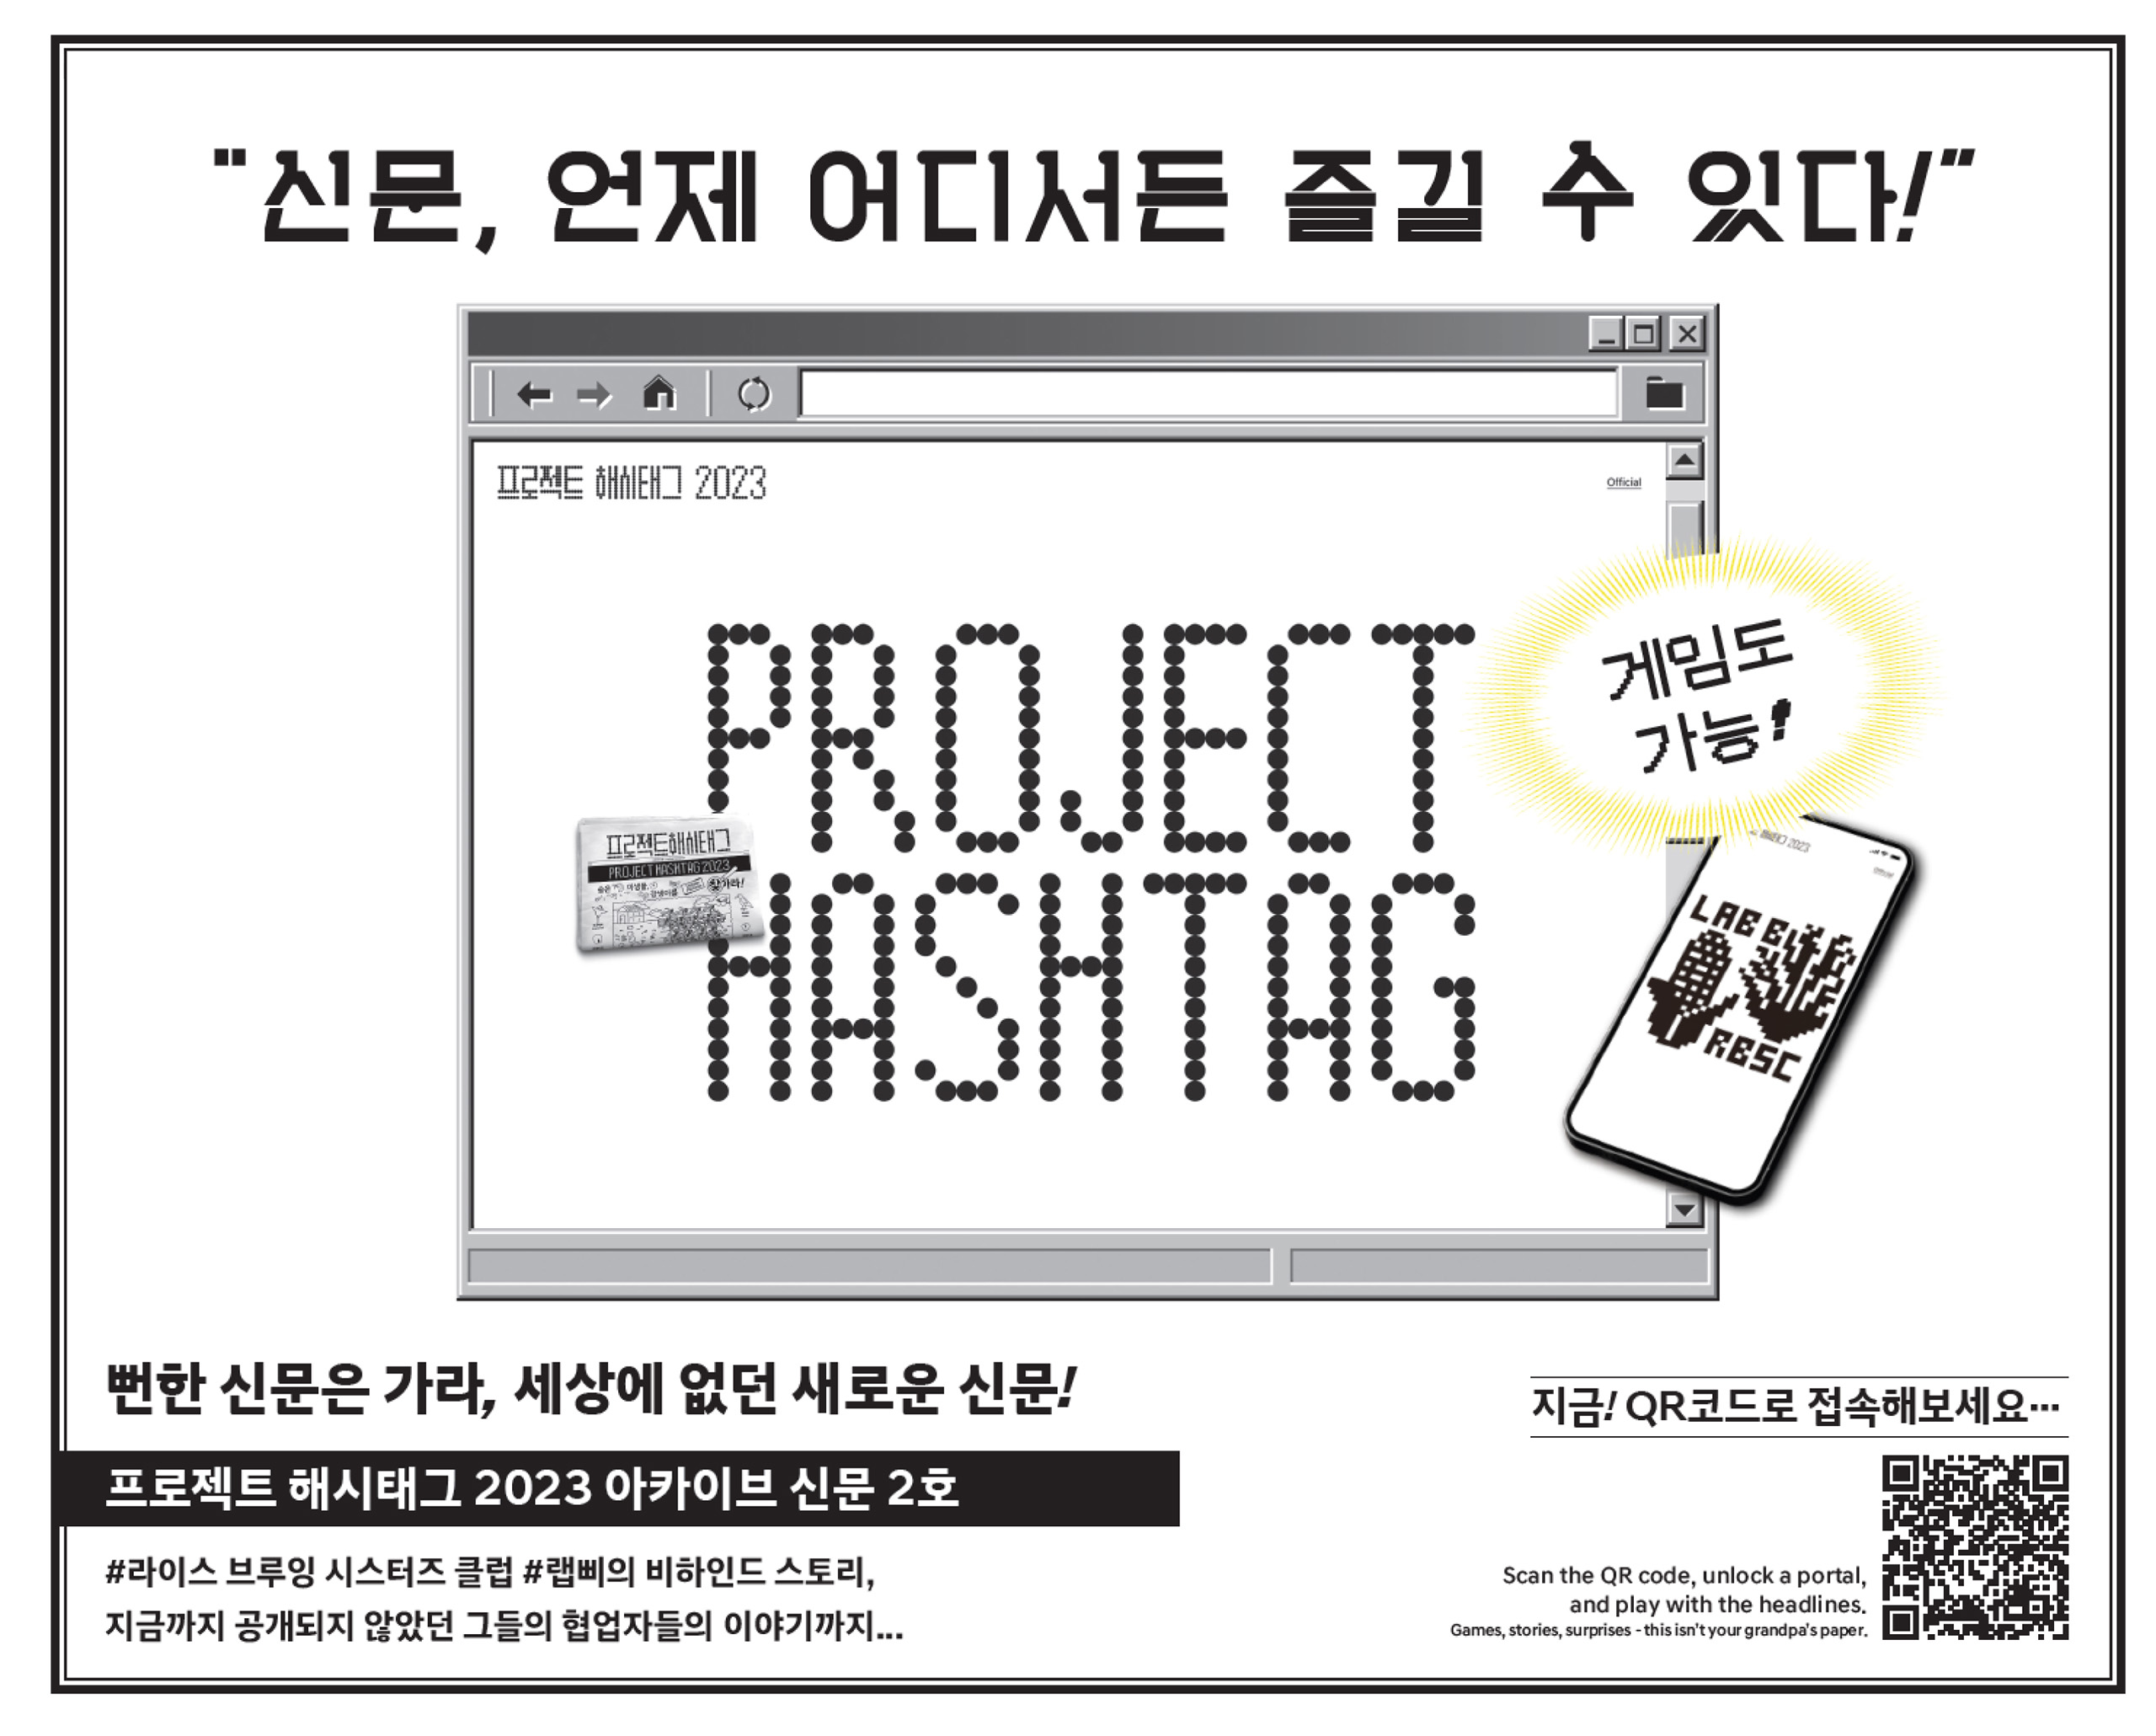 15_프로젝트 해시태그_project hashtag